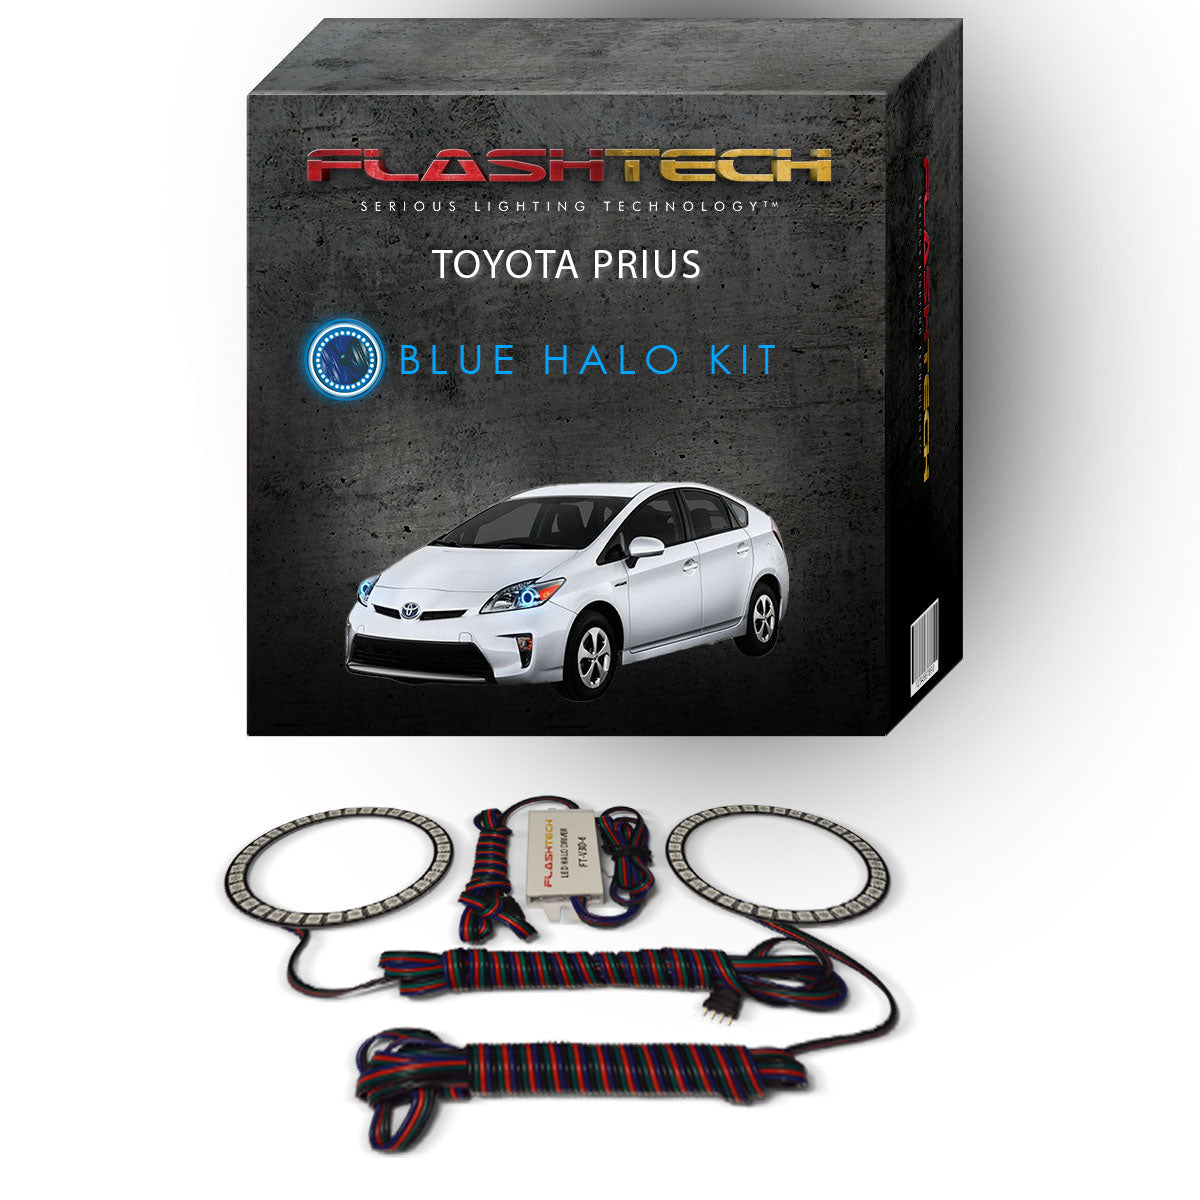 Toyota-Prius-2010, 2011, 2012, 2013, 2014, 2015-LED-Halo-Headlights-RGB-Bluetooth RF Remote-TO-PR1015-V3HBTRF